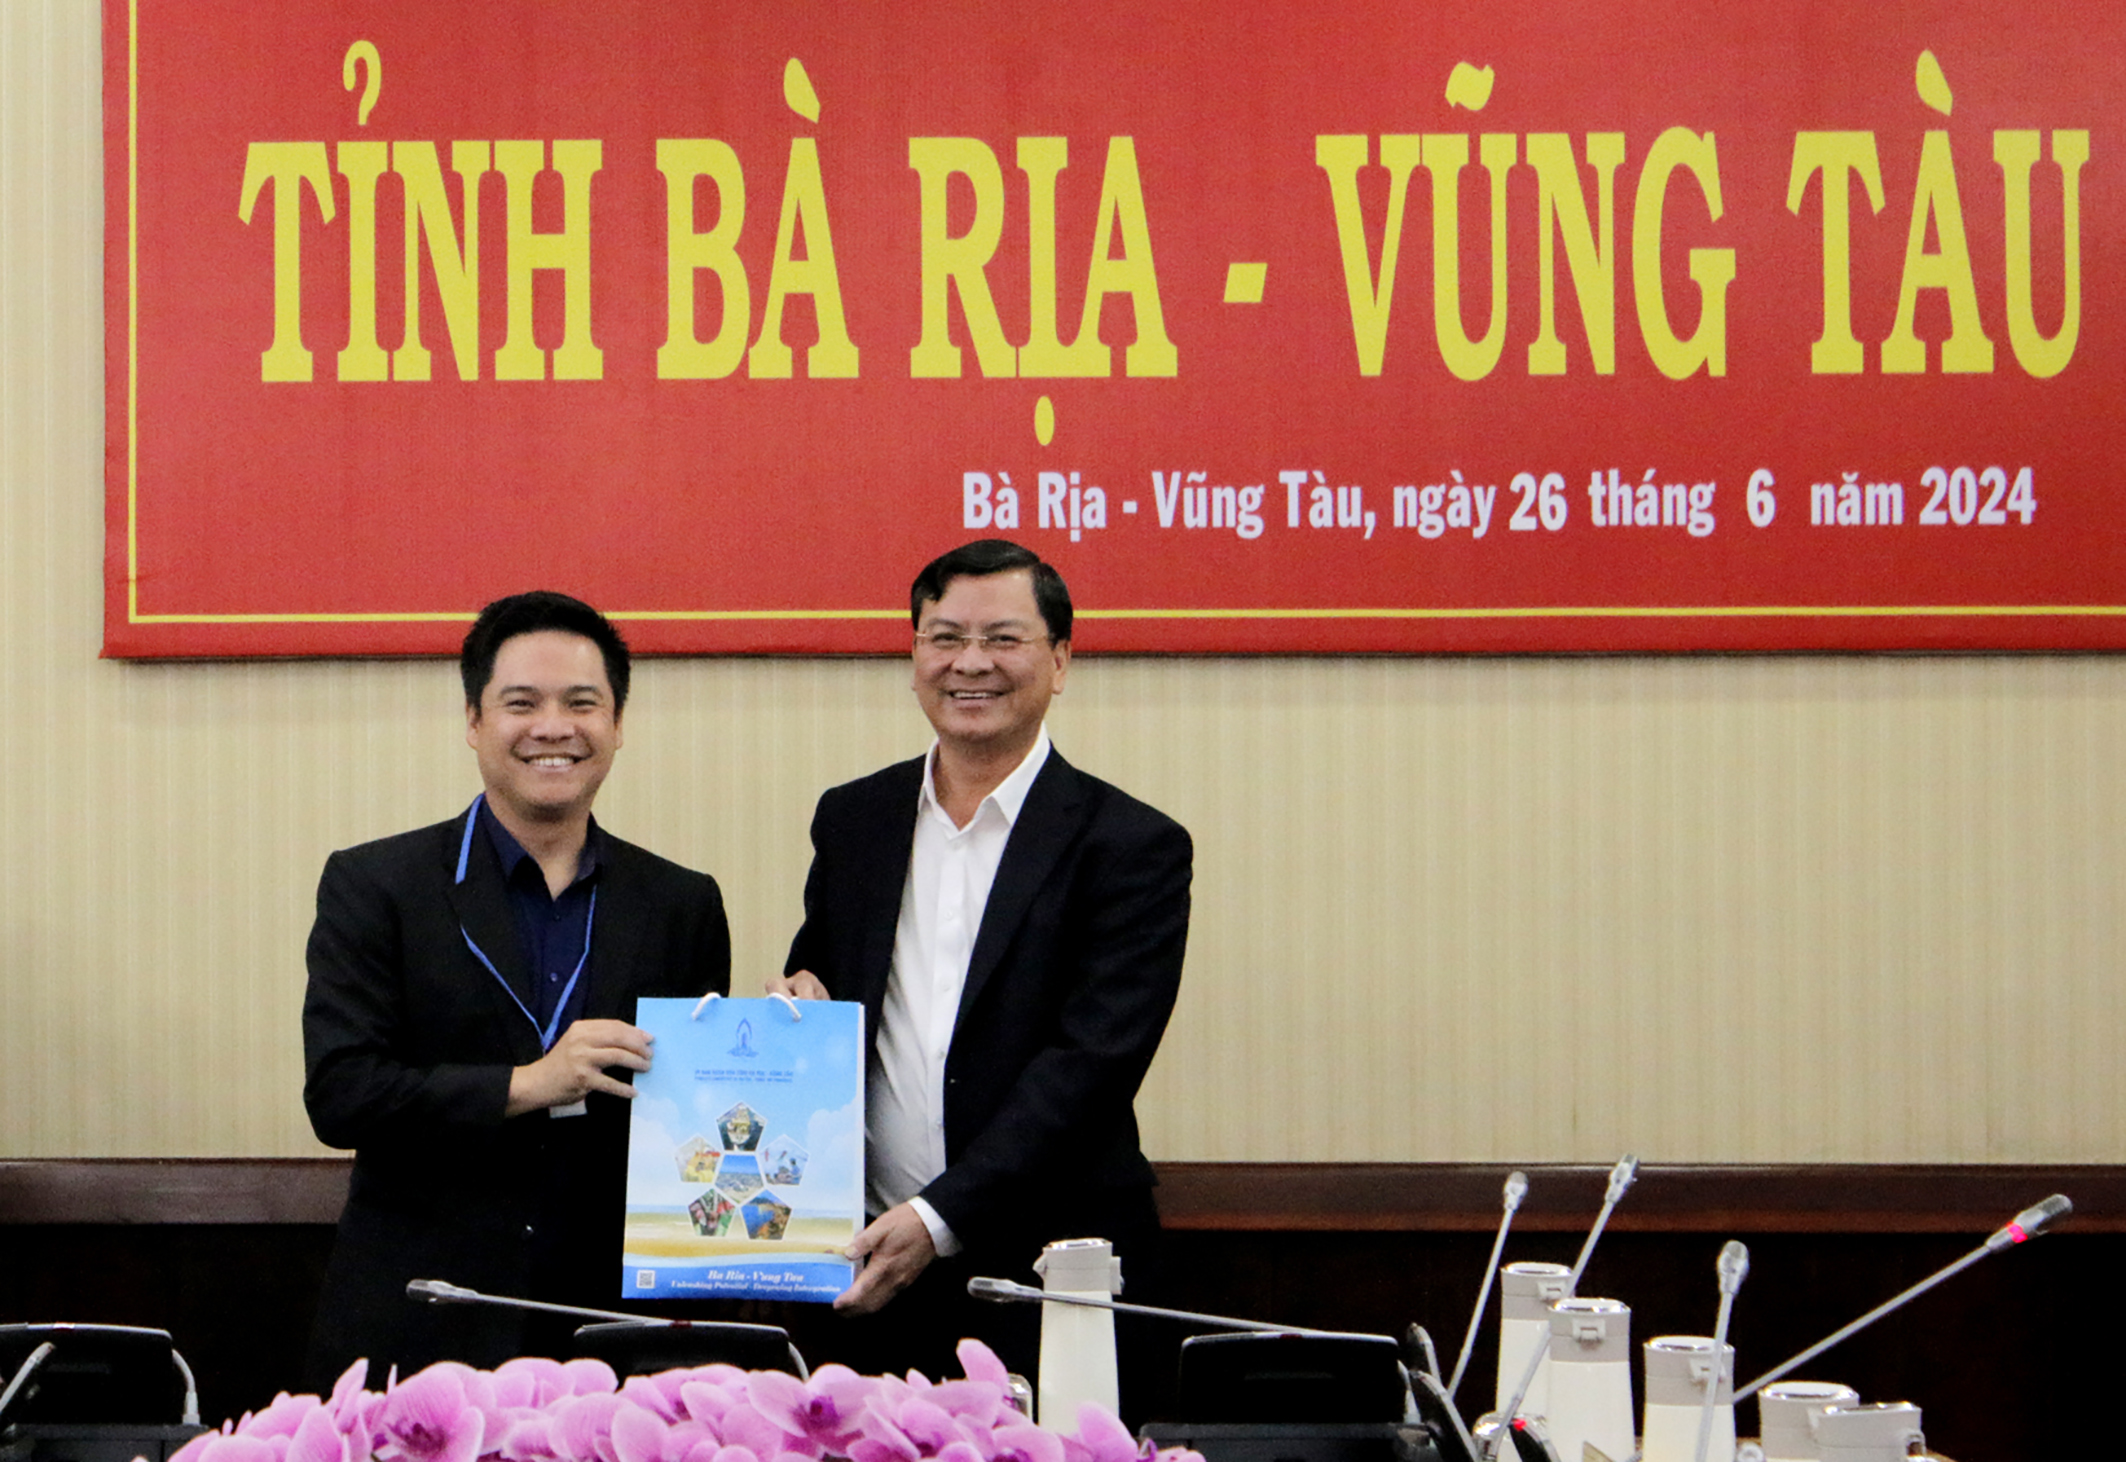 Ông Nguyễn Công Vinh, Phó Chủ tịch UBND tỉnh tặng quà cho ông Kenneth Chia, Chủ tịch Hiệp hội các ngành công nghiệp thủy sản Singapore tại buổi tiếp.